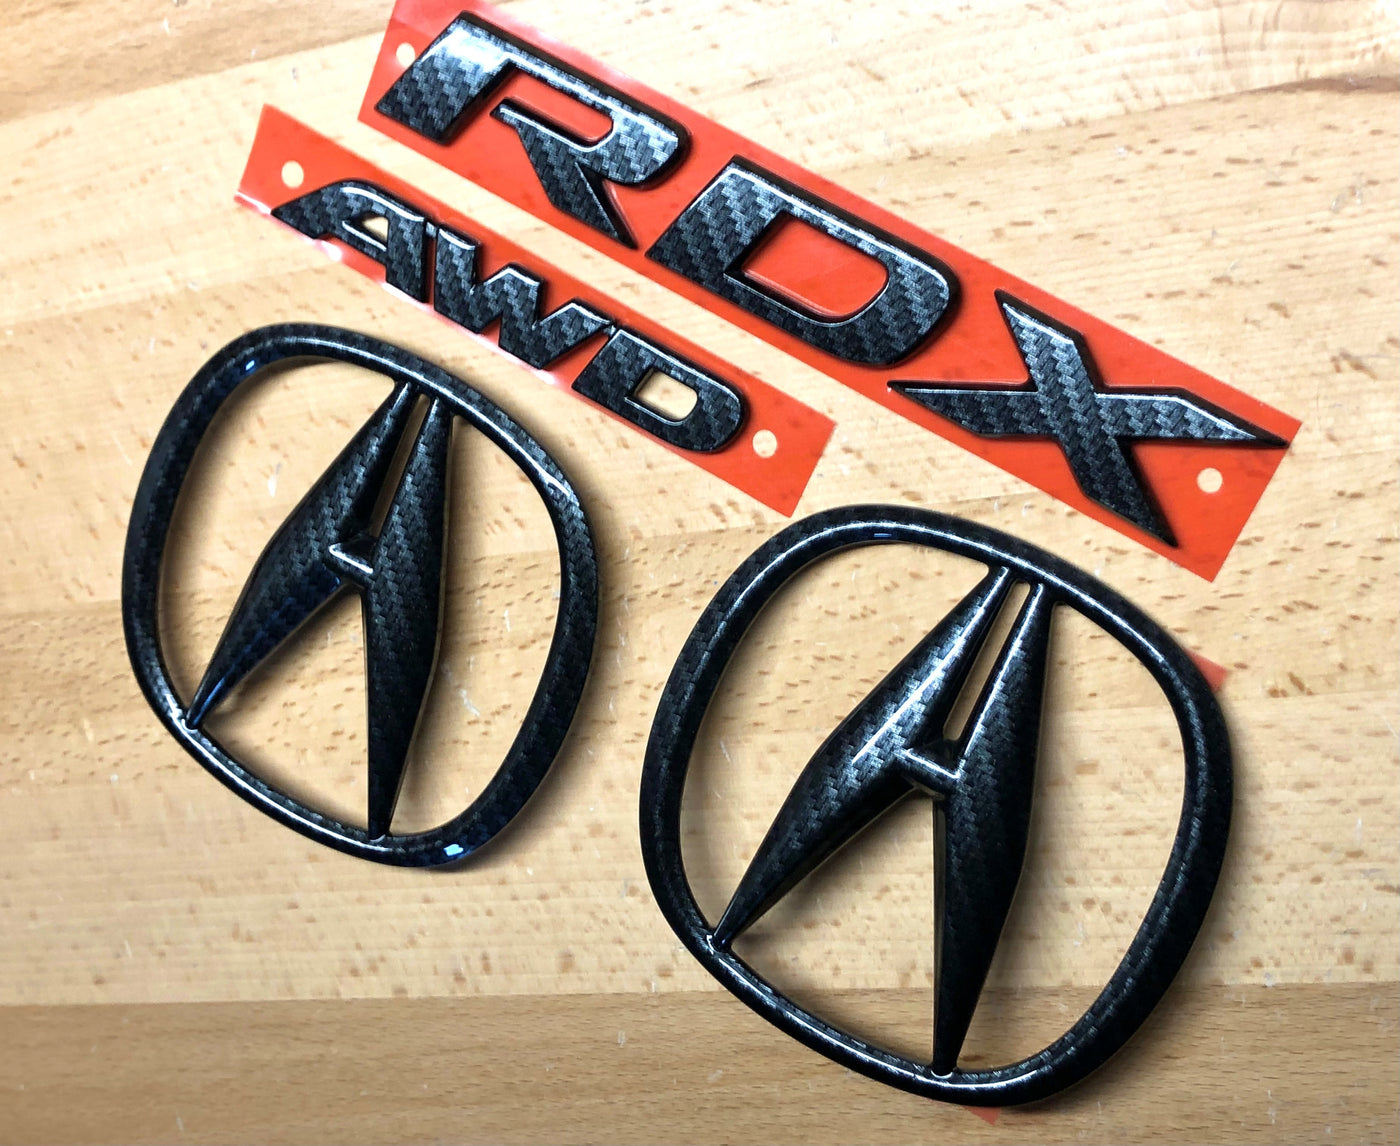 Acura RDX Carbon Fiber Effect Emblem Set 2013-2018